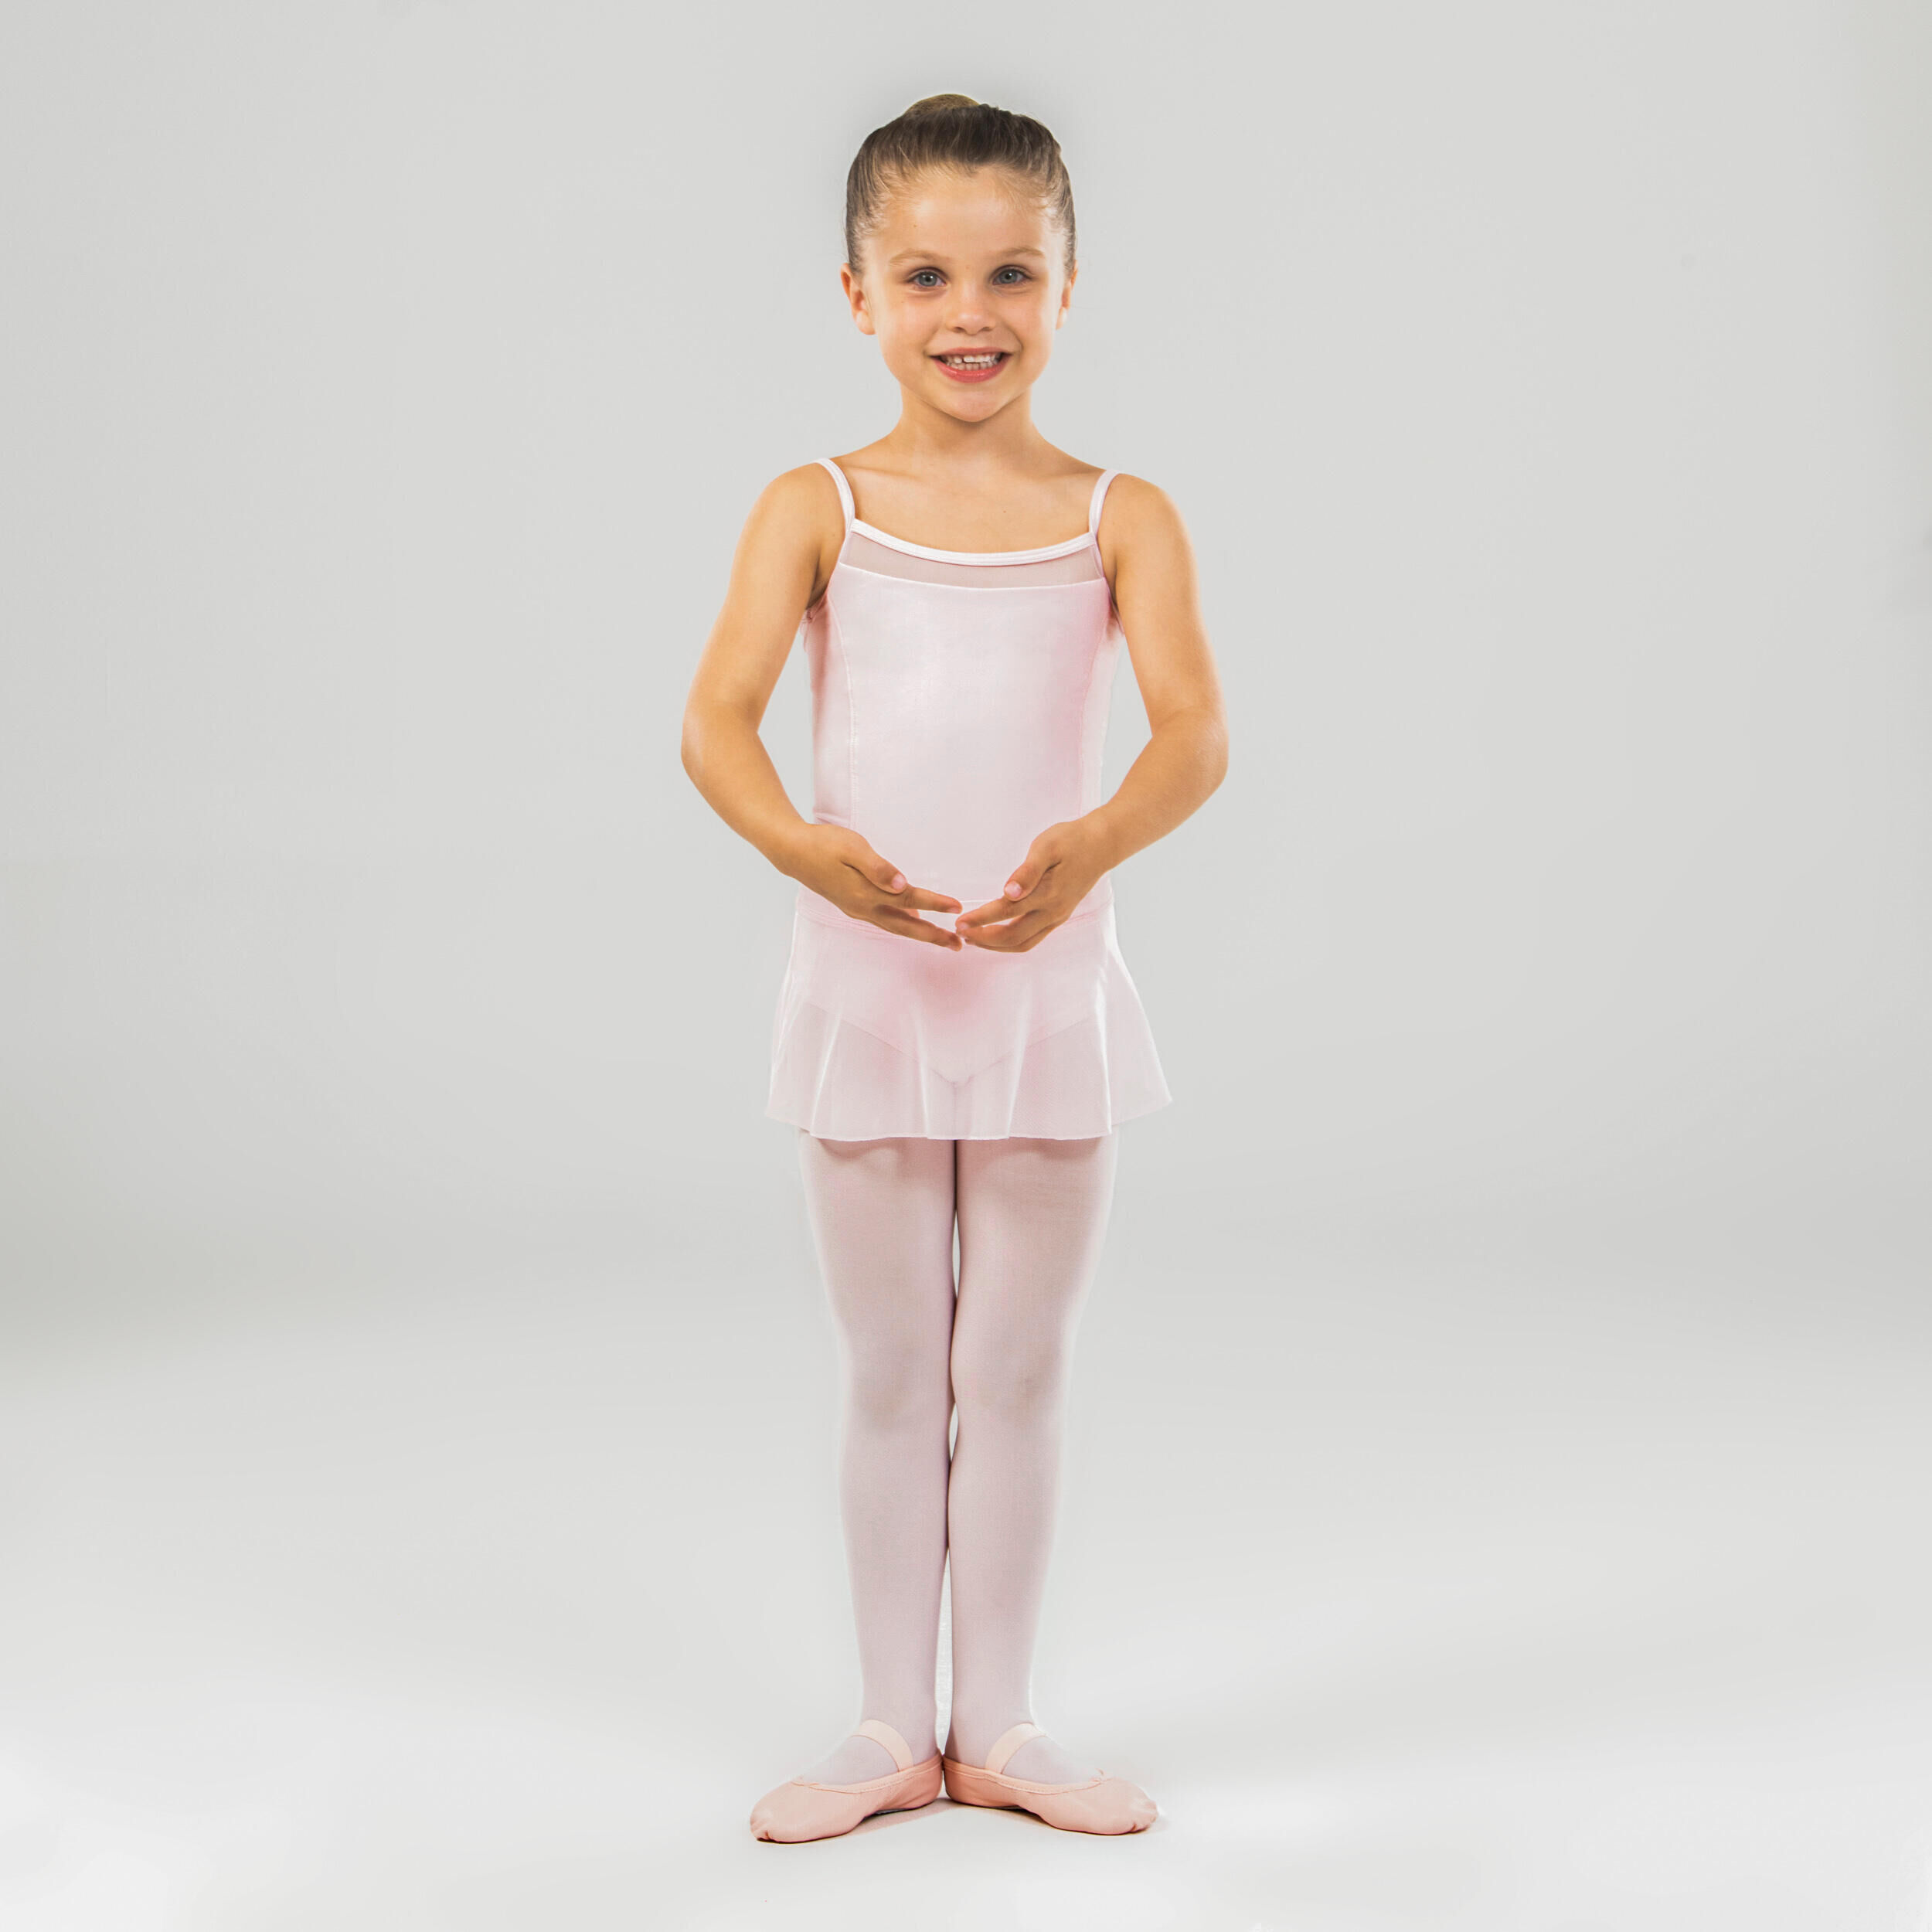 STAREVER Girls' Ballet Camisole Leotard - Pink